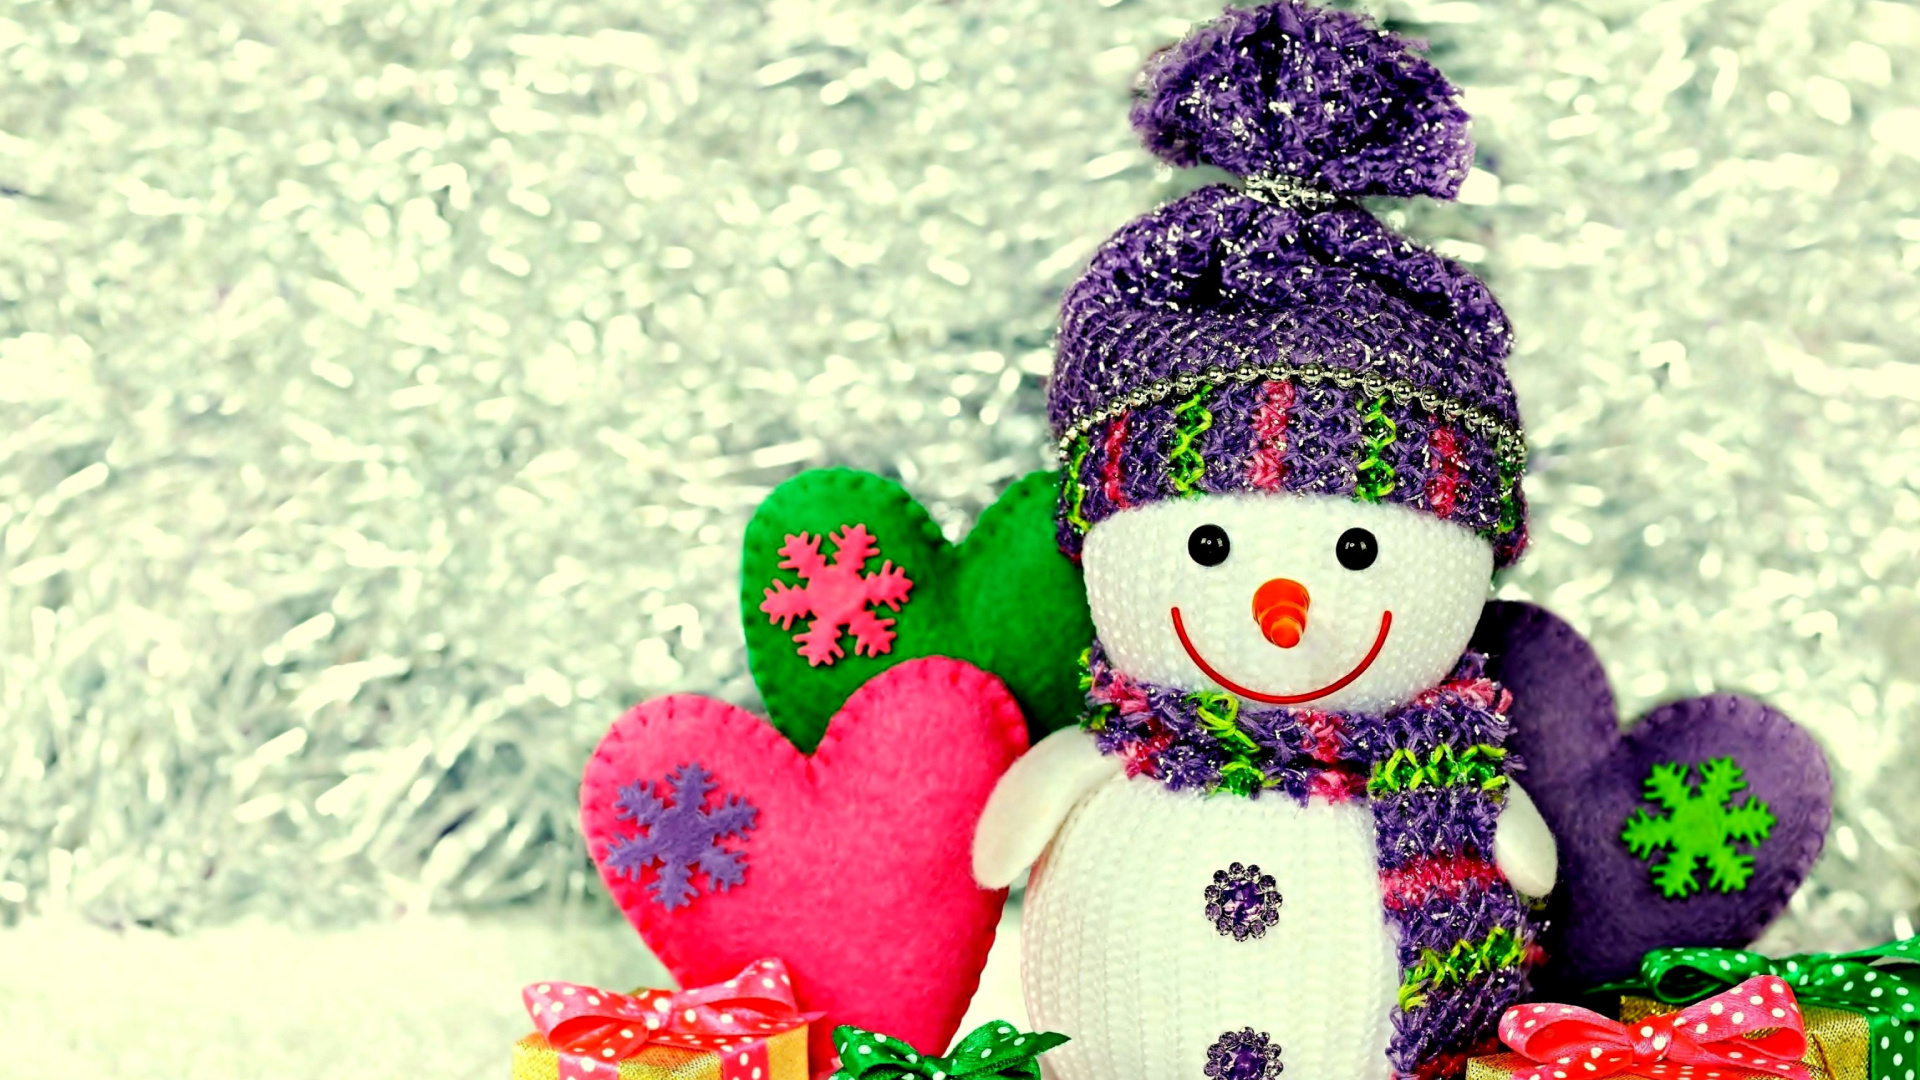 Обои Homemade Snowman with Gifts 1920x1080